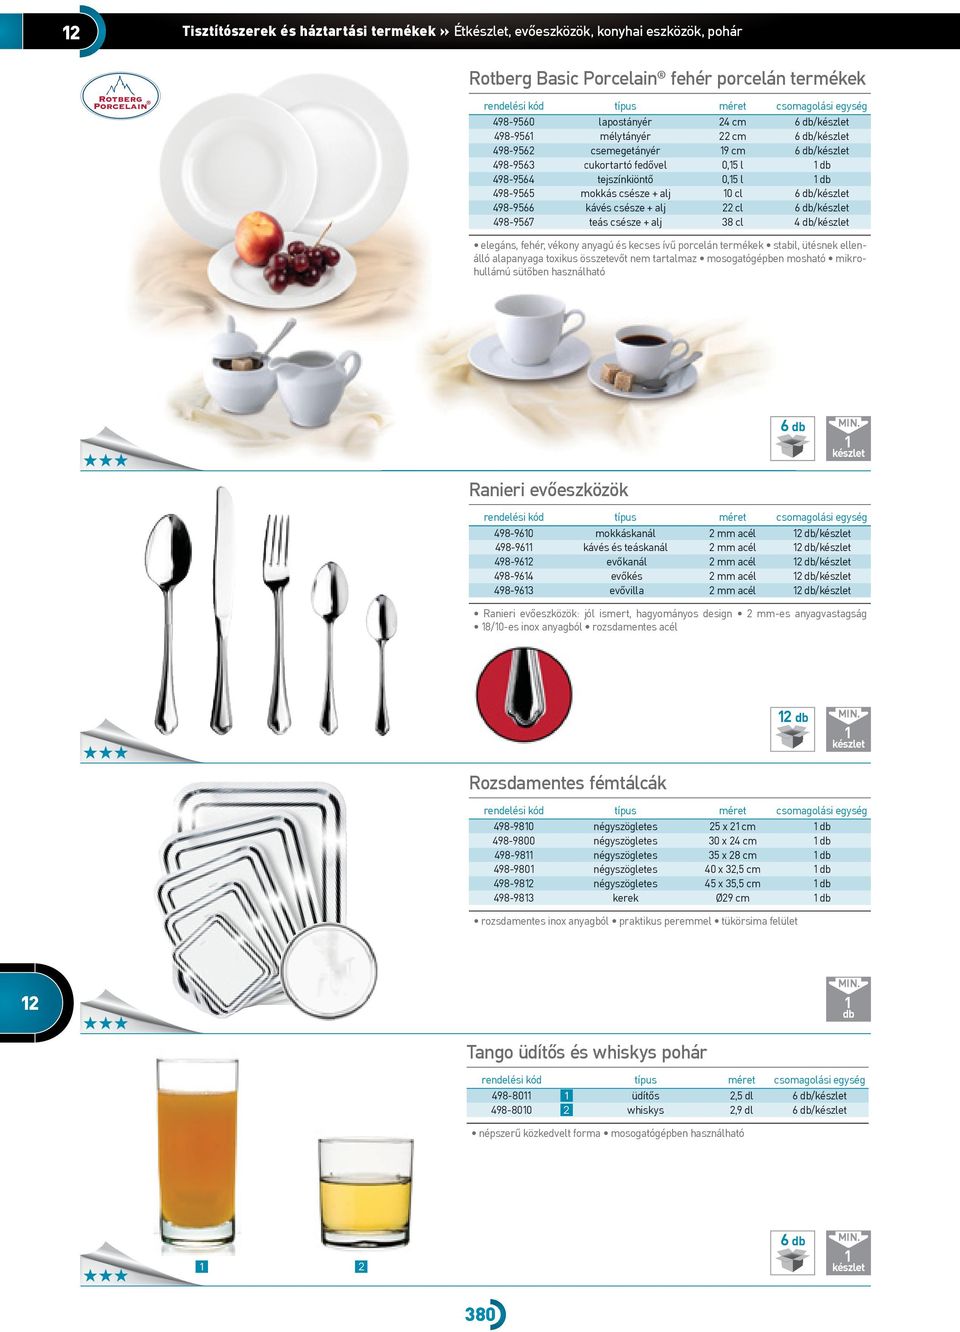 498-9566 kávés csésze + alj 22 cl 6 /készlet 498-9567 teás csésze + alj 38 cl 4 /készlet elegáns, fehér, vékony anyagú és kecses ívű porcelán termékek stabil, ütésnek ellenálló alapanyaga toxikus